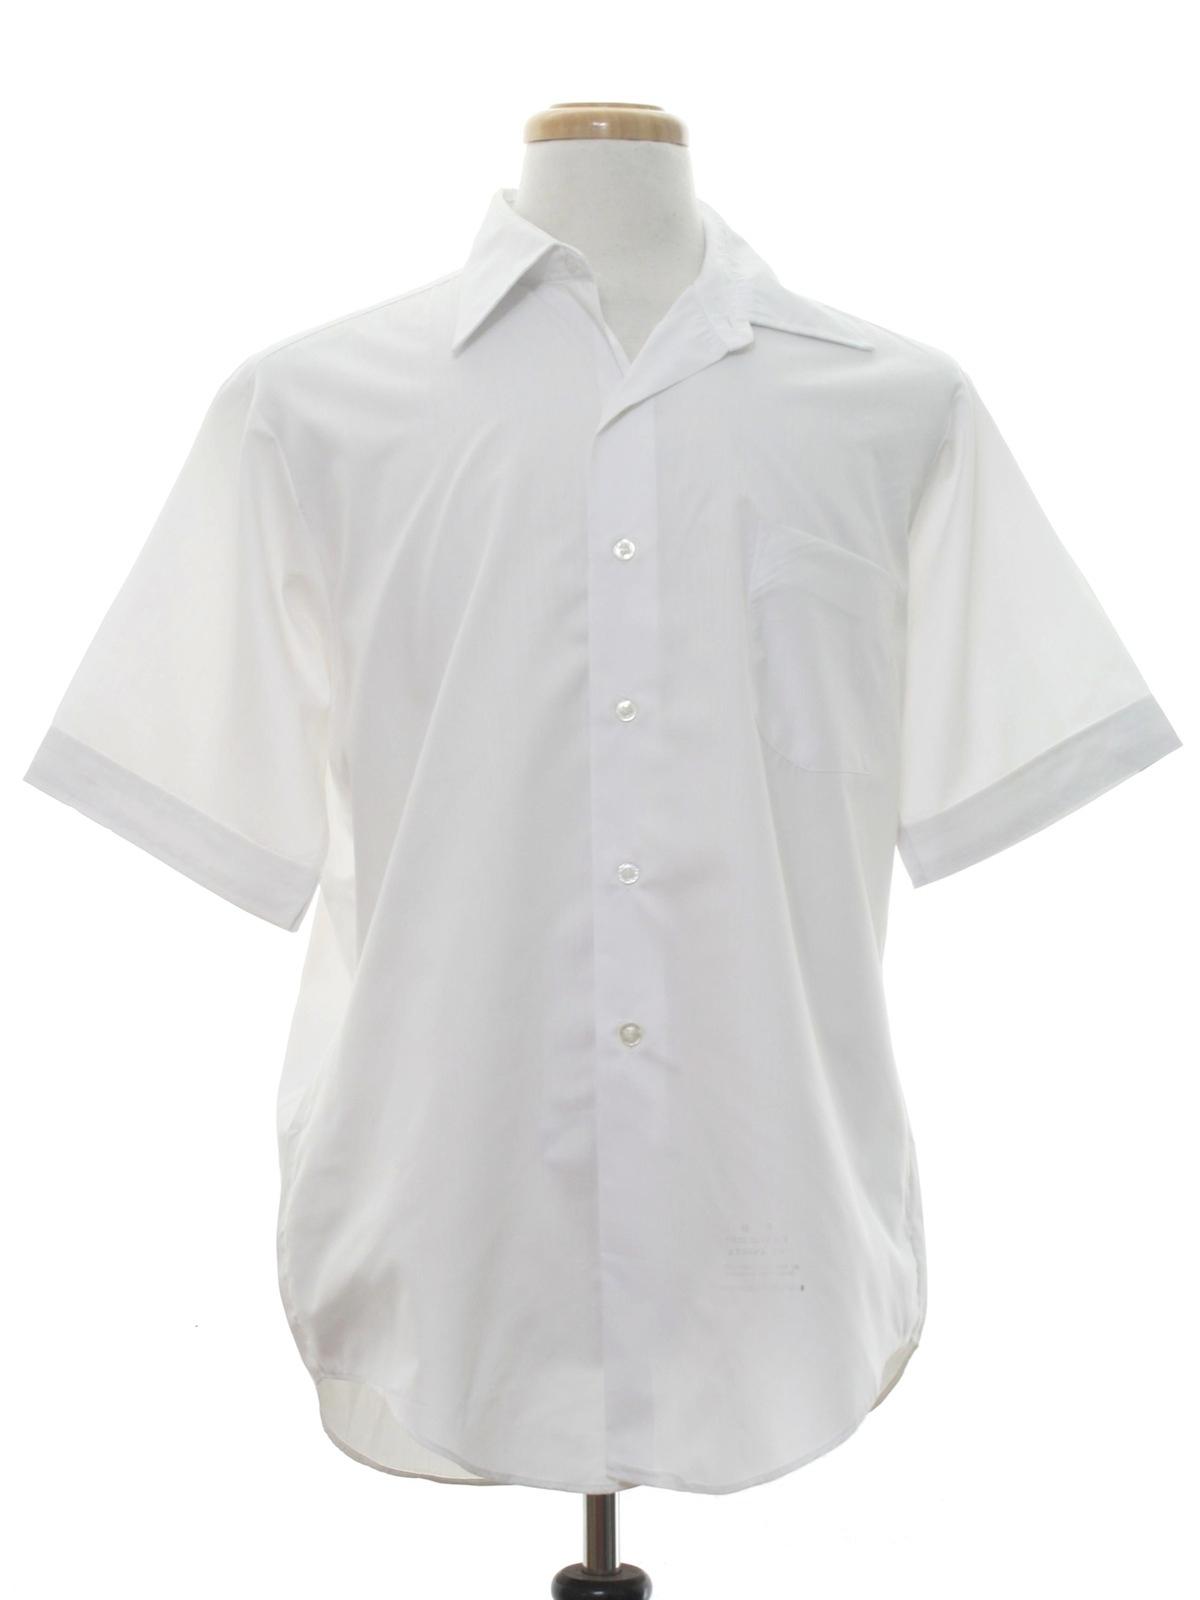 Retro 60s Shirt (Van Heusen Hampshire House Bradley) : 60s -Van Heusen ...